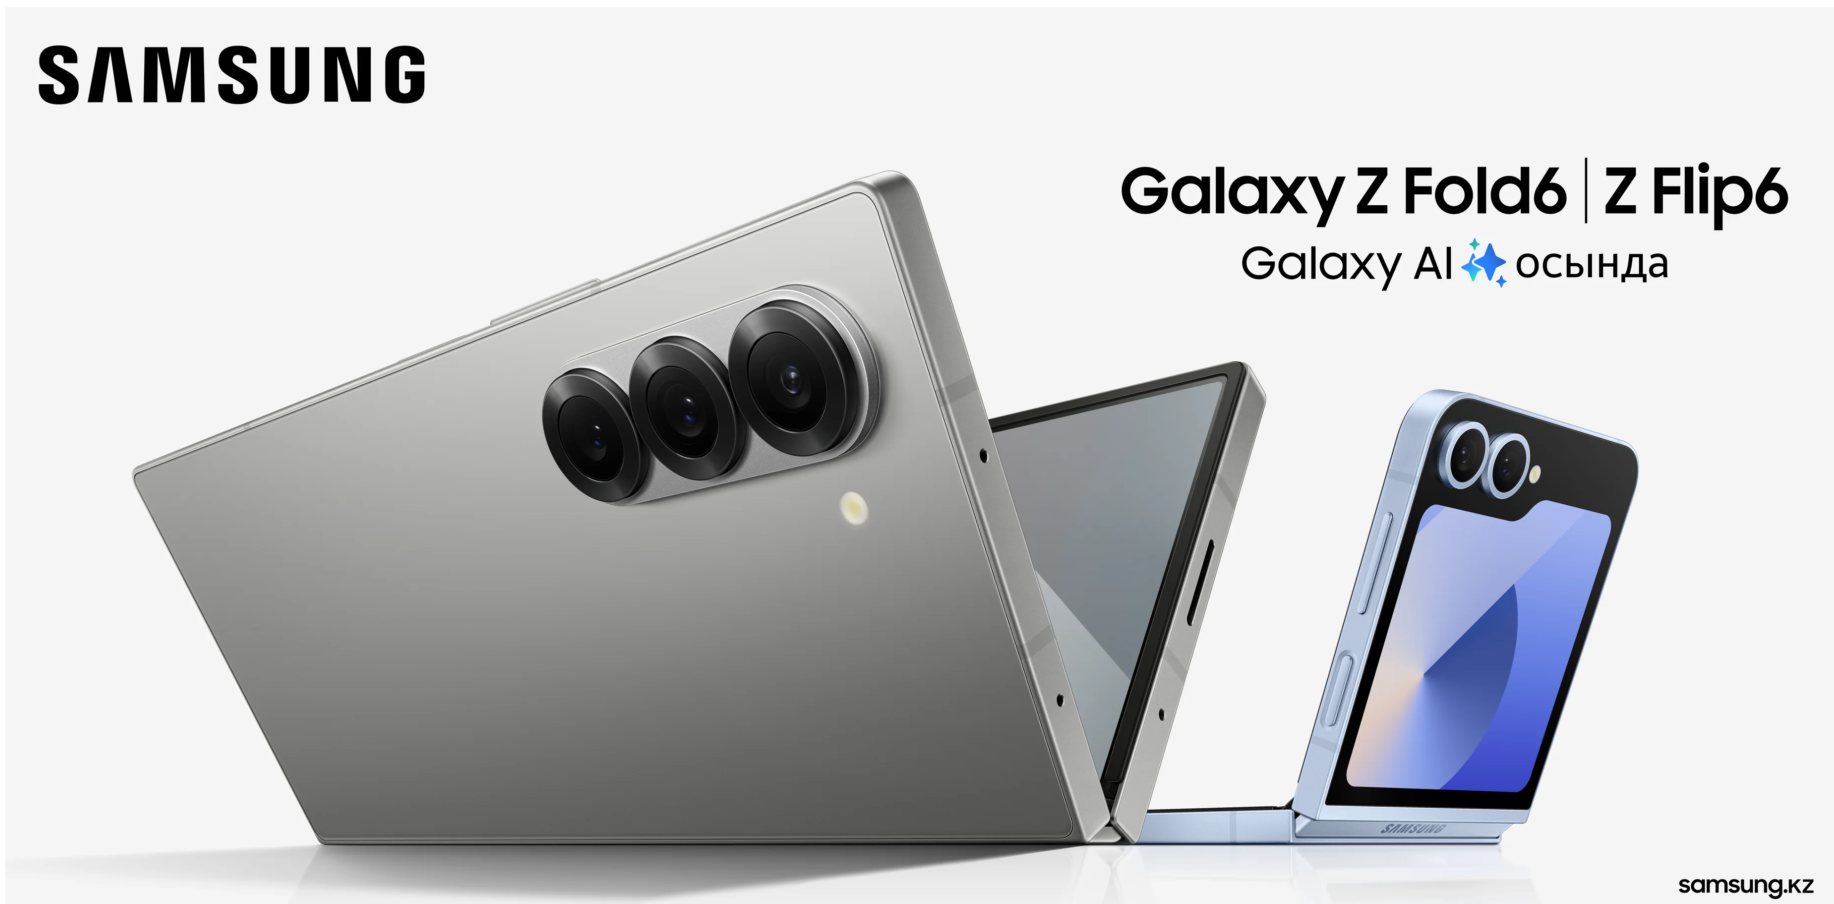 Das Samsung Galaxy Z Fold6 und Galaxy Z Flip6 auf geleaktem Werbematerial